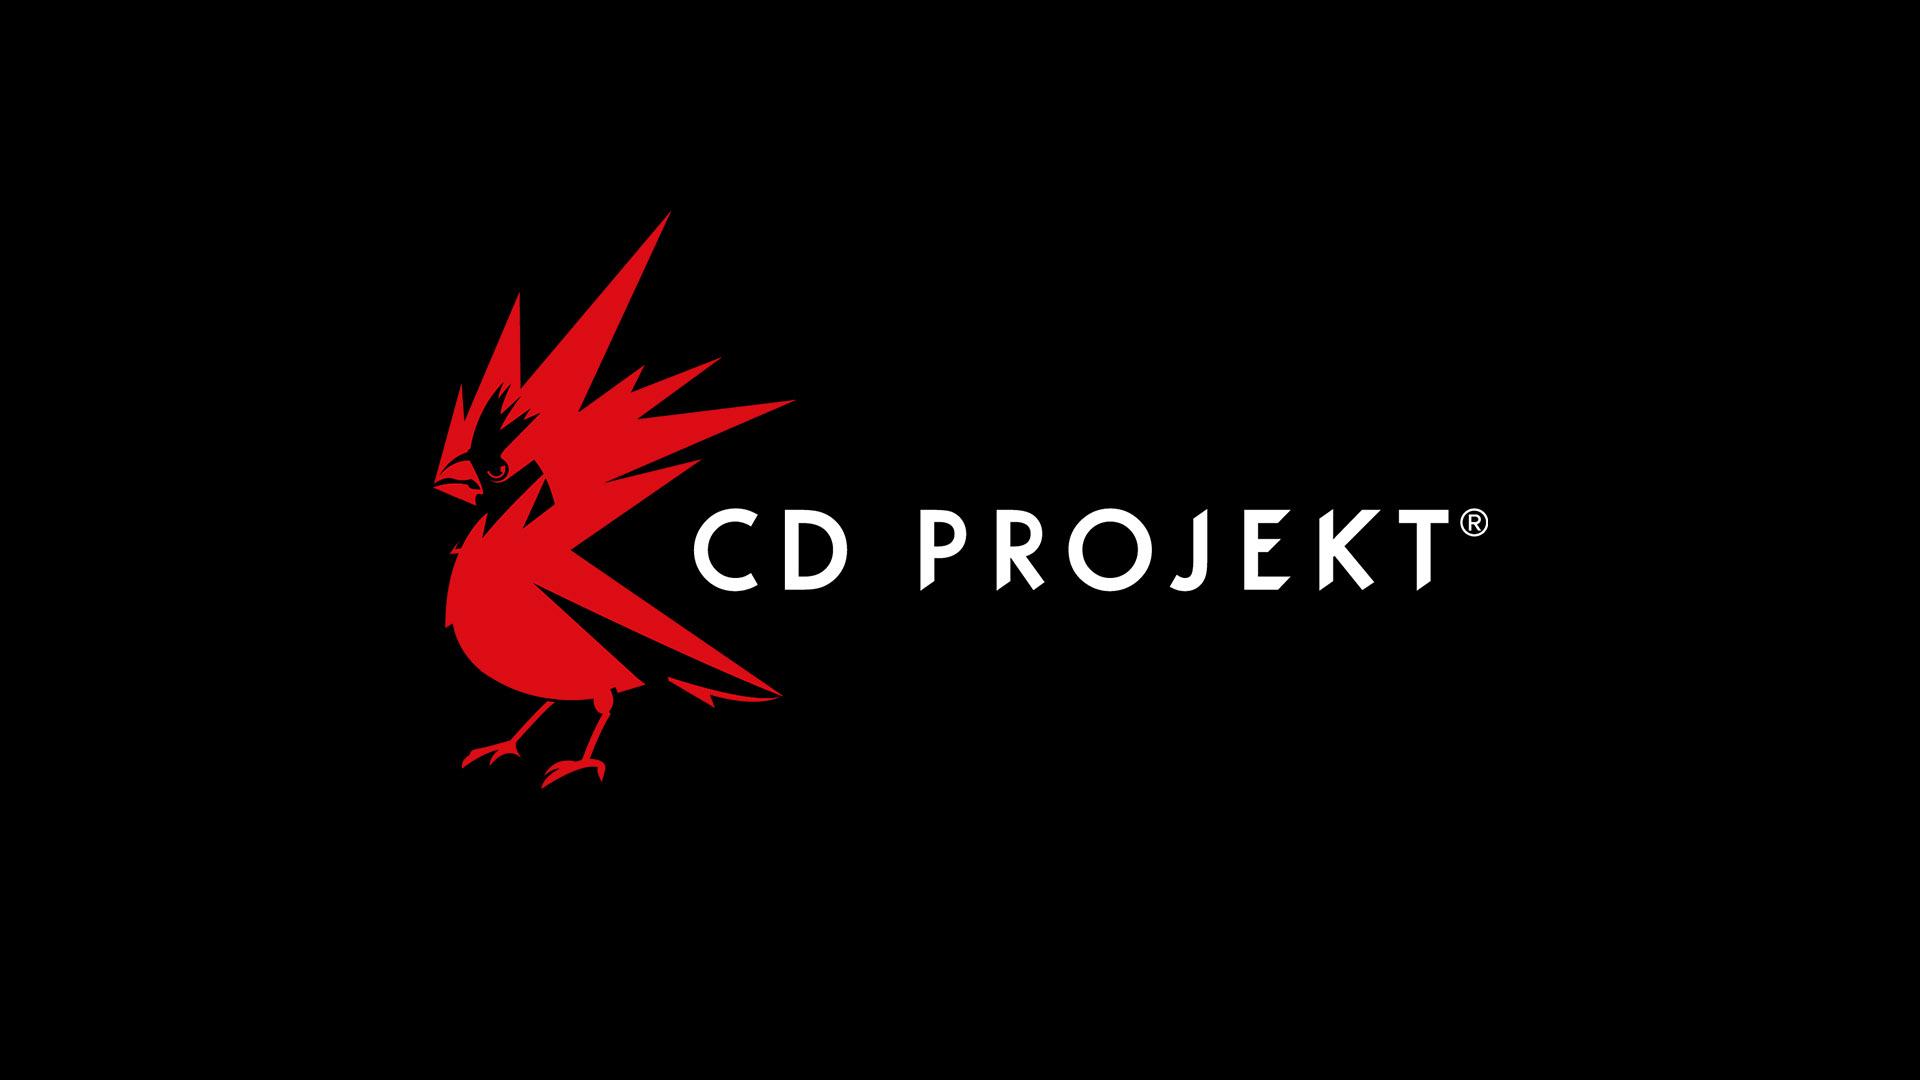 CD Projekt предупредила о мошенниках, якобы торгующих ее акциями